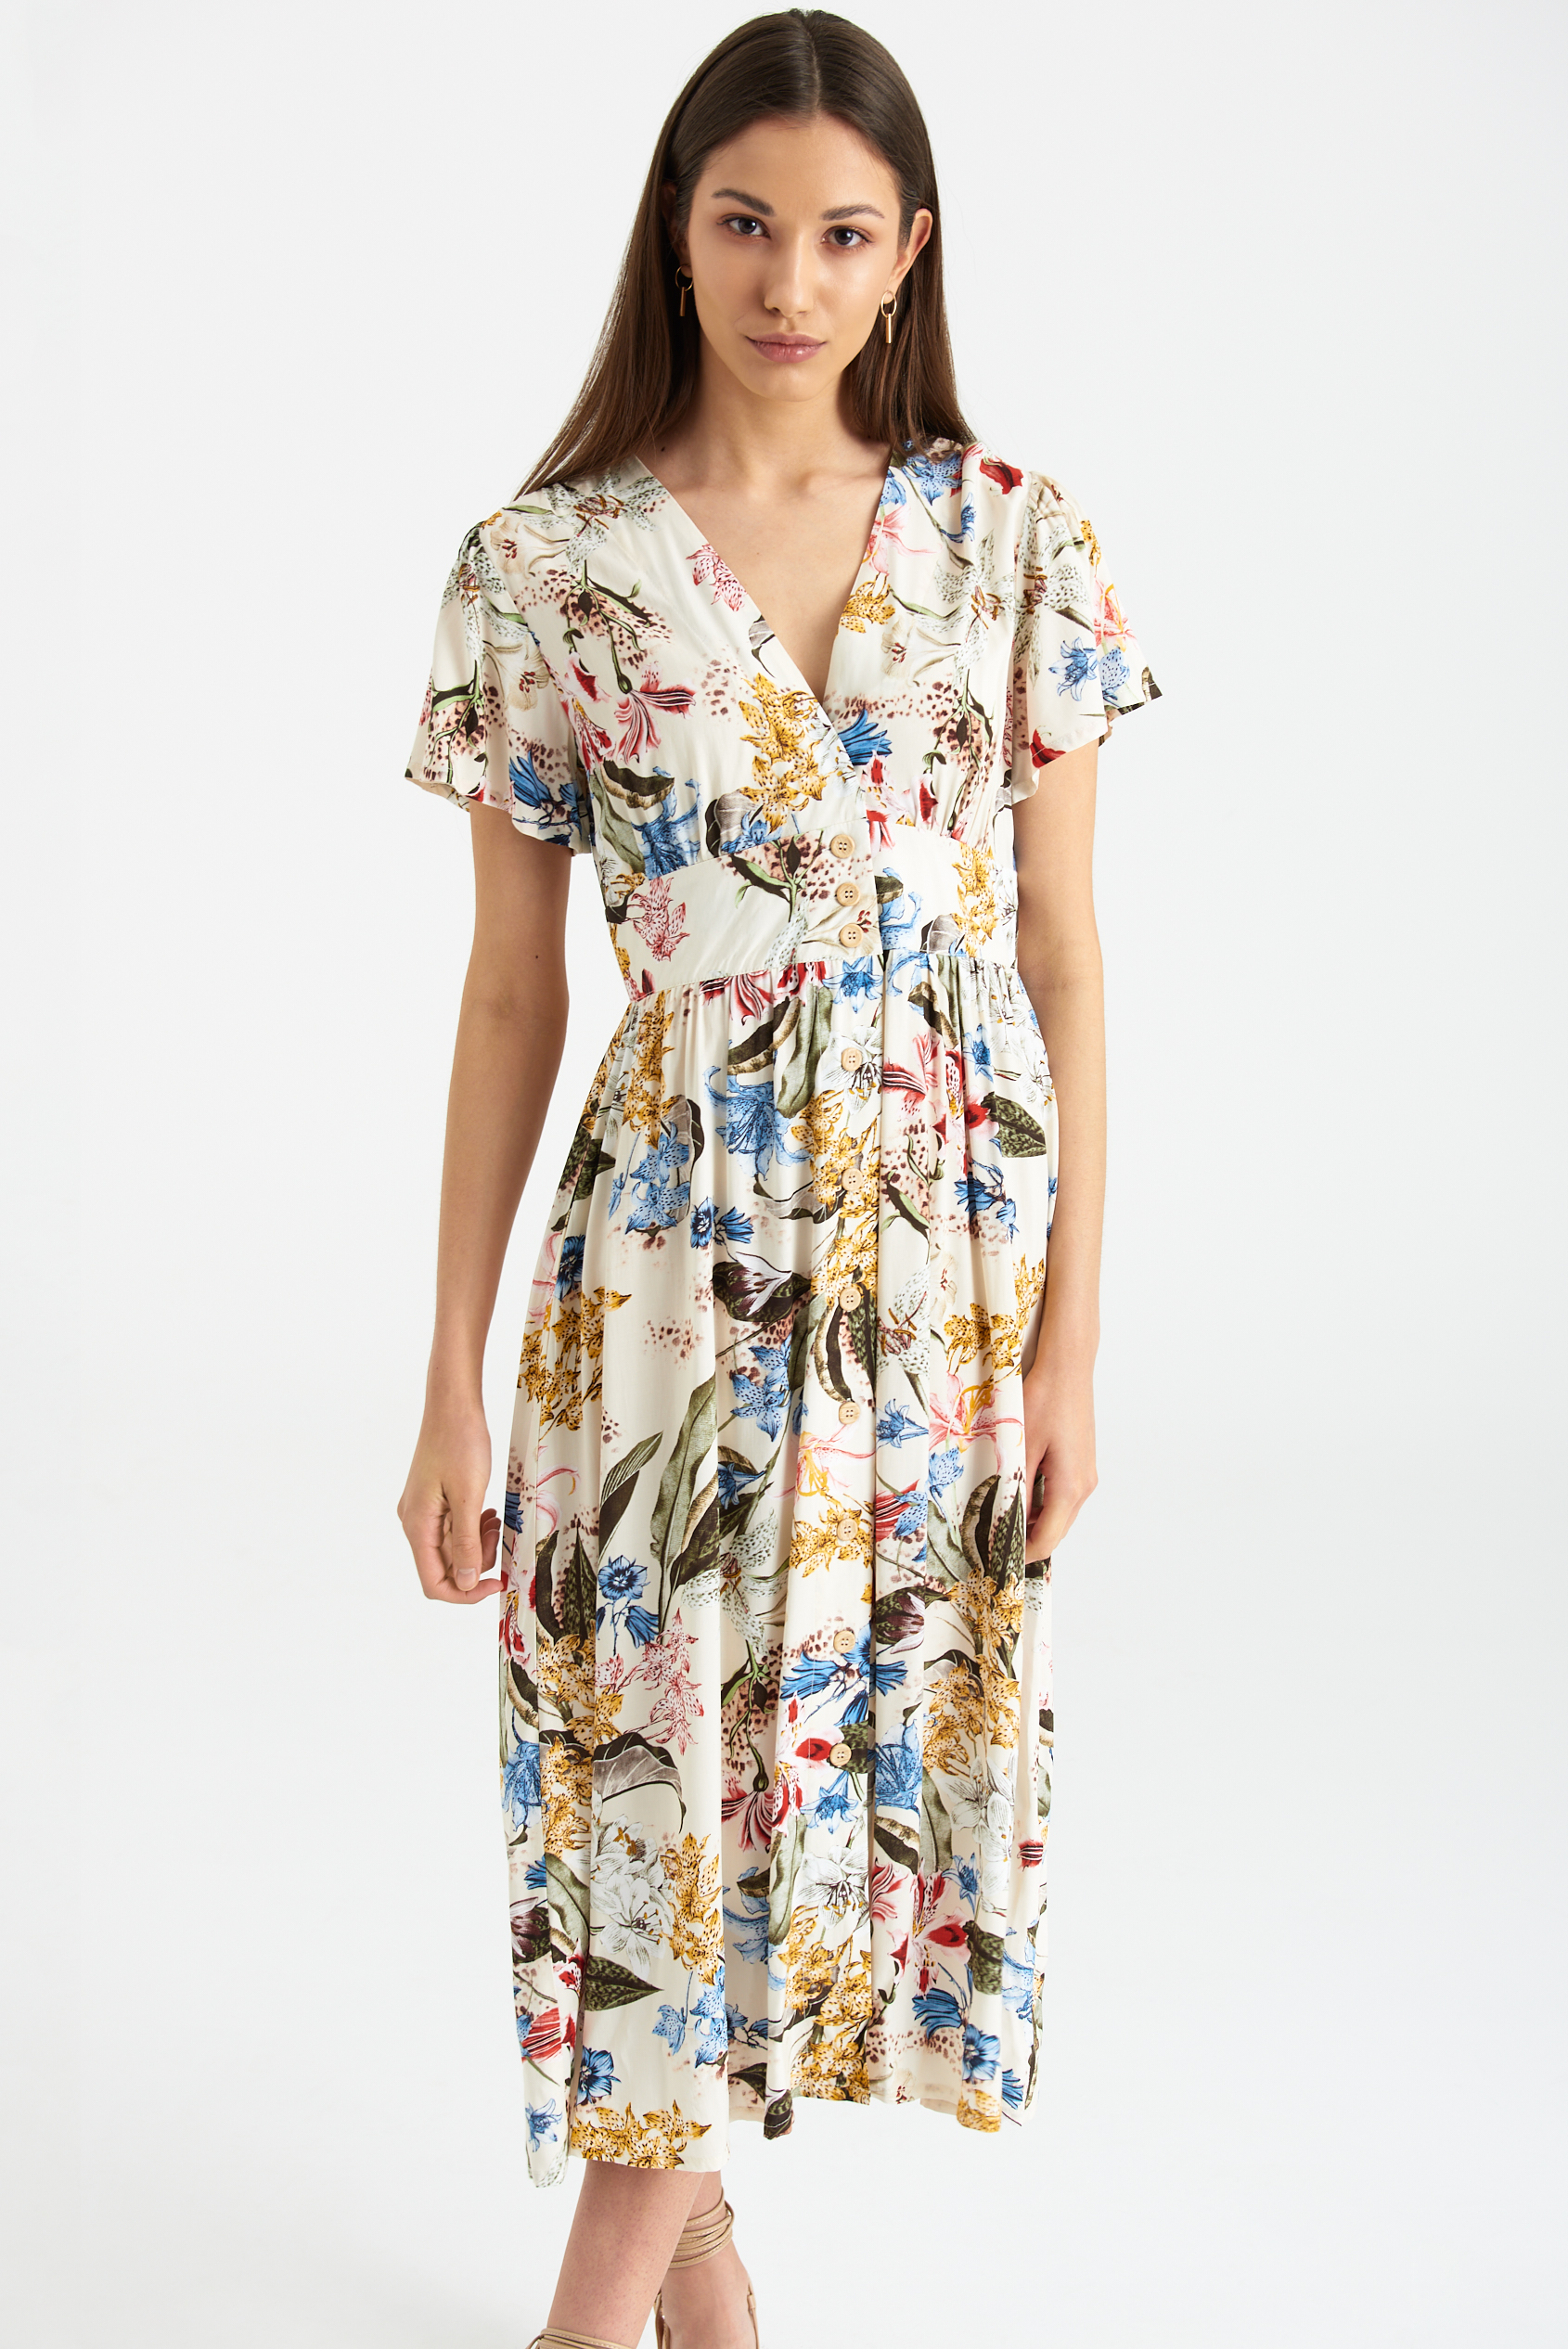 Wiskozowa sukienka midi z nadrukiem w kwiaty, dekolt V